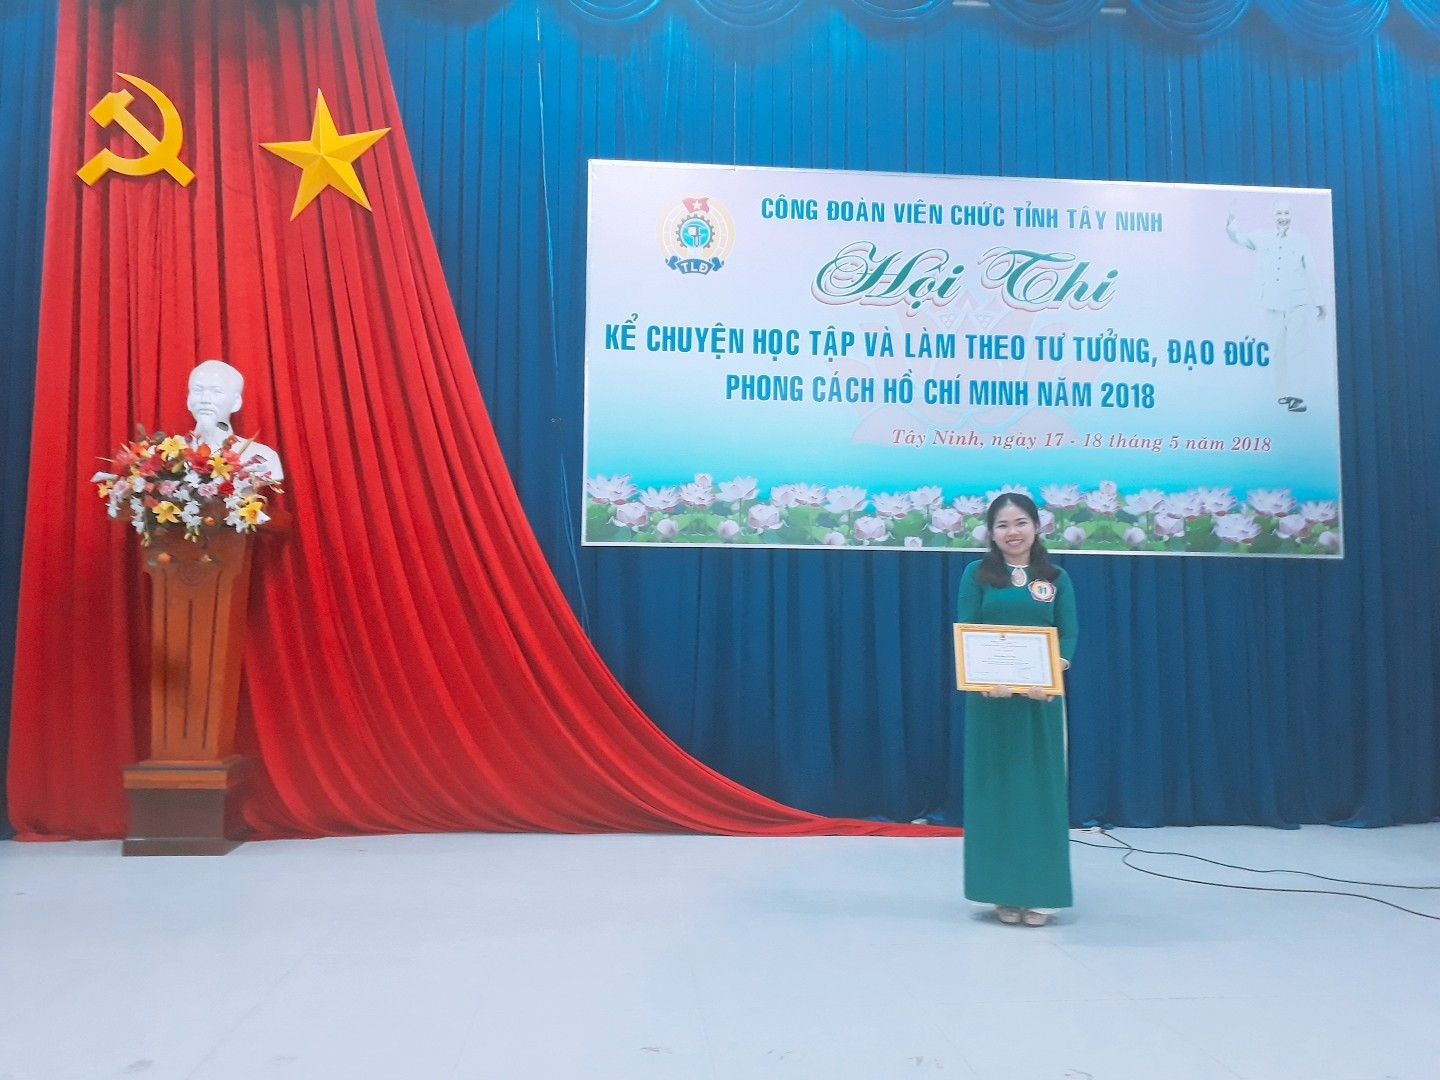 TAND tỉnh Tây Ninh học tập và làm theo tư tưởng đạo đức, phong cách Hồ Chí Minh năm 2018